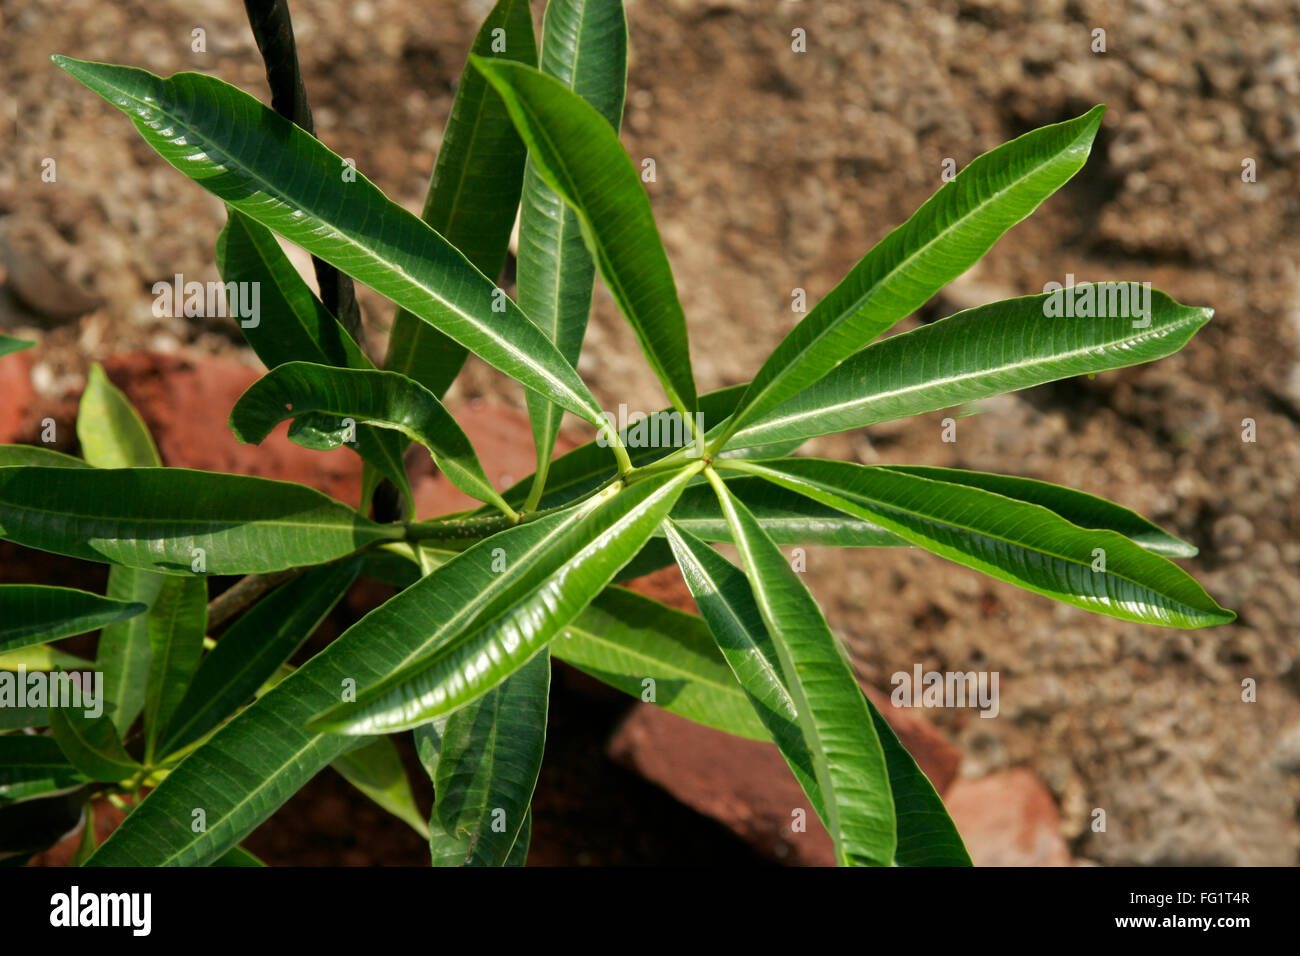 Ayurvedische Heilpflanze wissenschaftlicher Name: Alstonia Scholaris Englisch name weiße Cheesewood Milkwood Kiefer Tafel Baum Kiefer Stockfoto